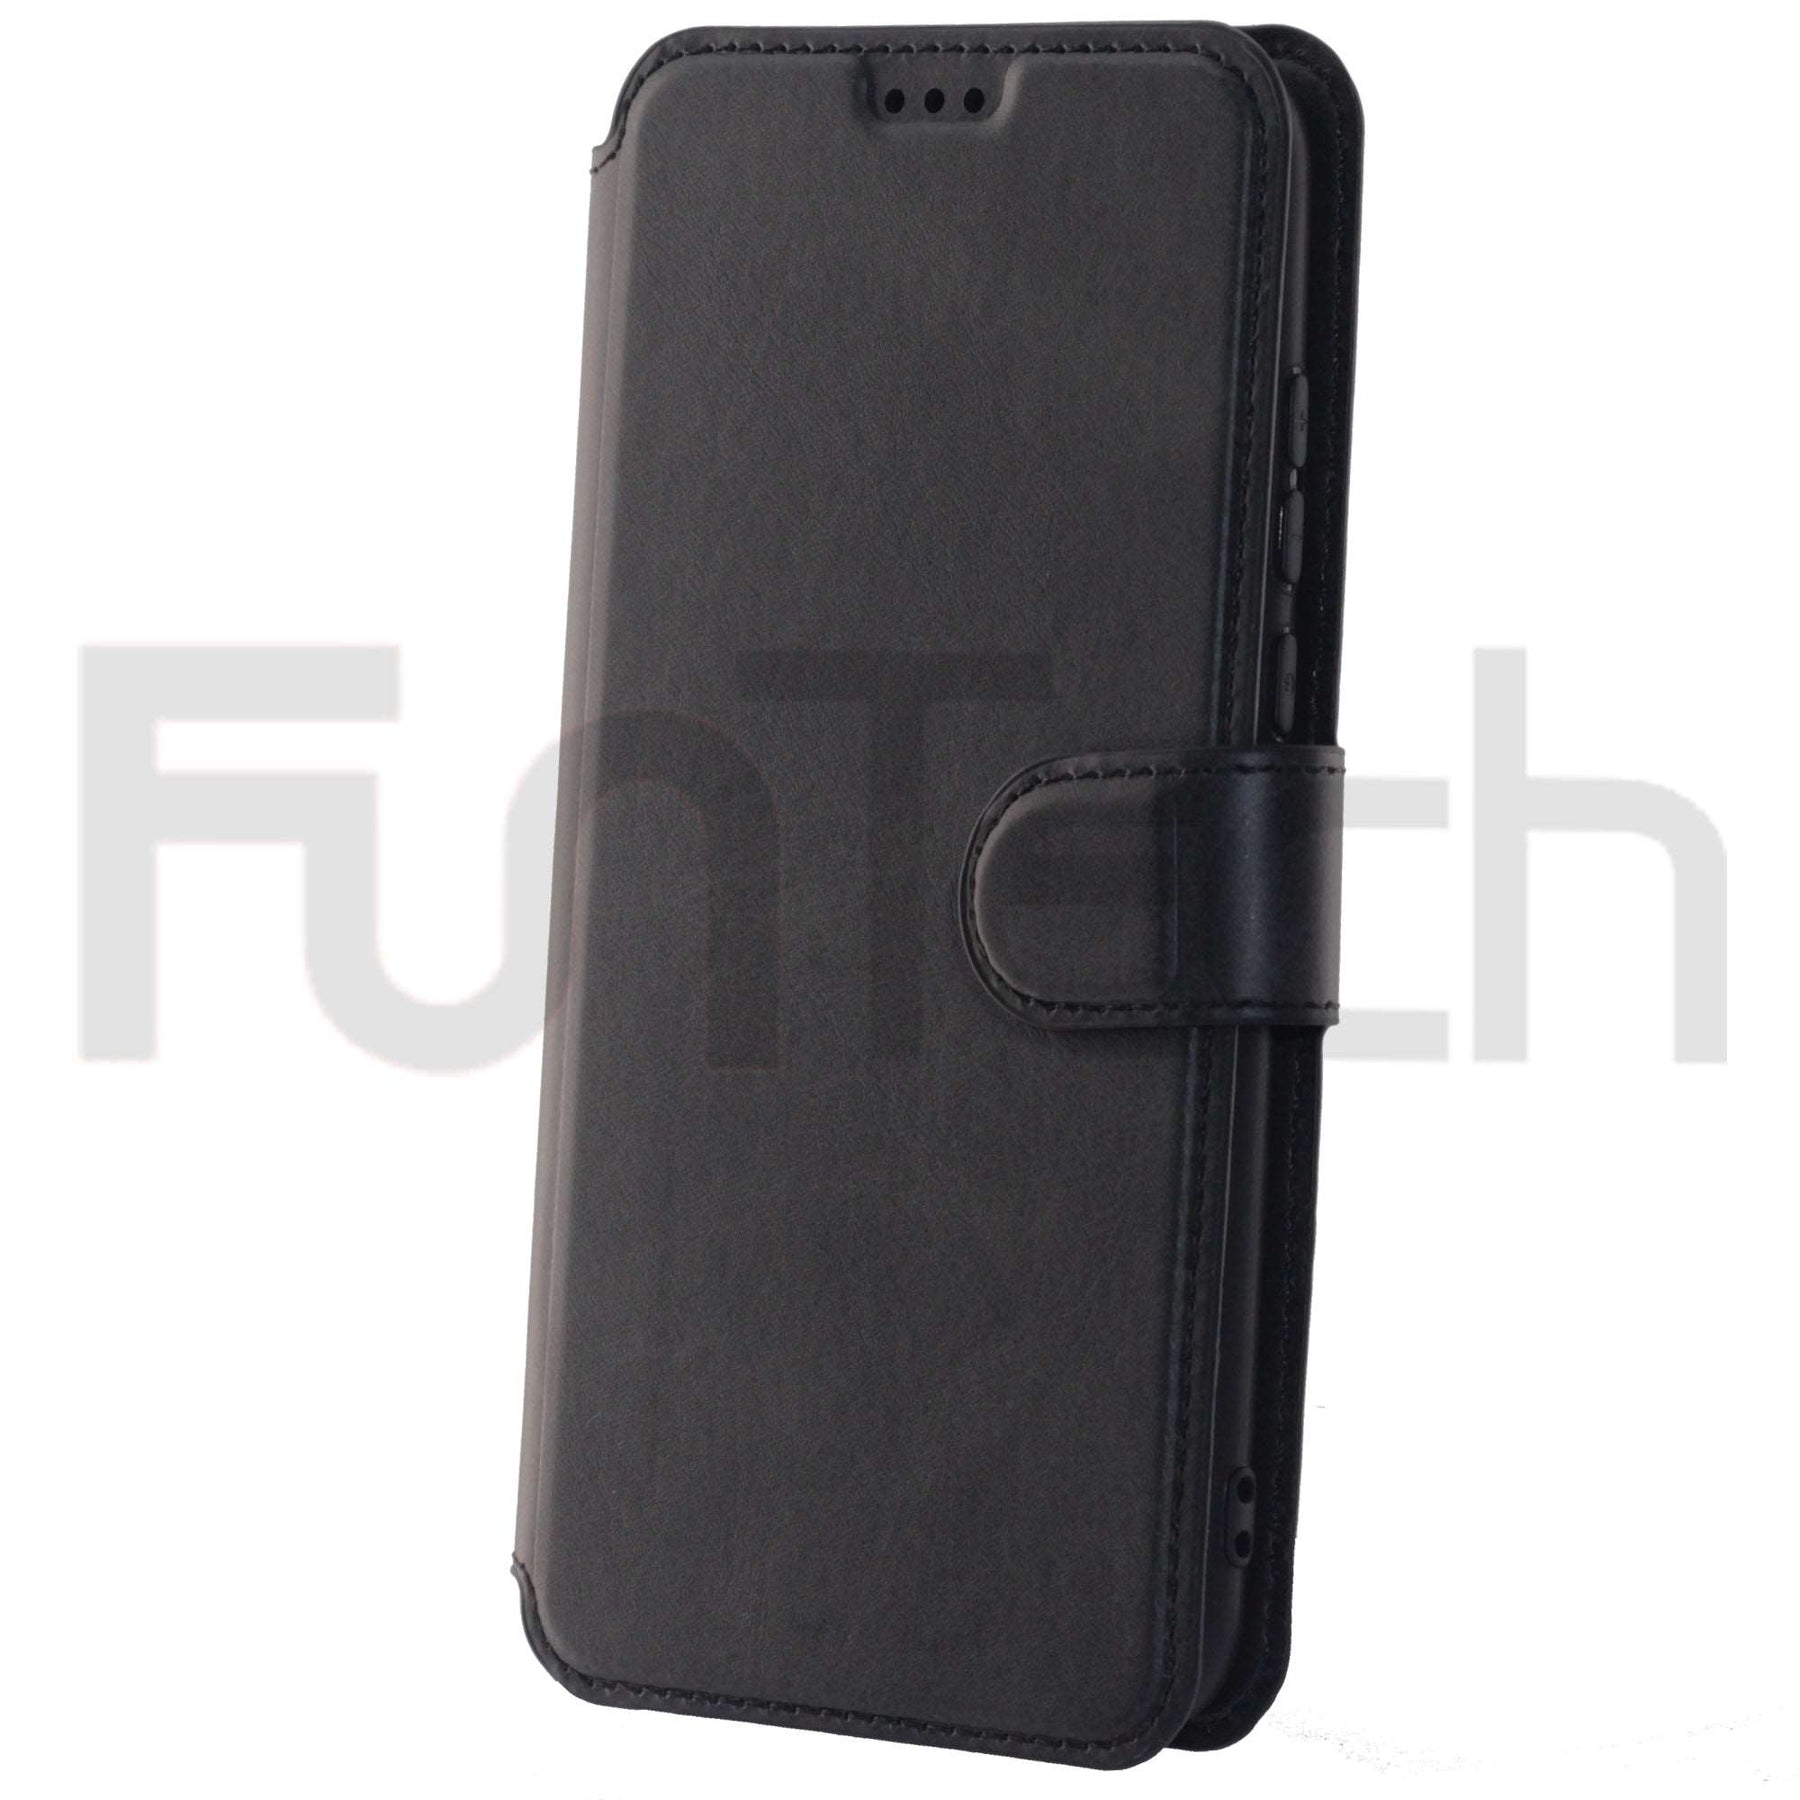 Huawei P30 Lite, Case, Color Black.